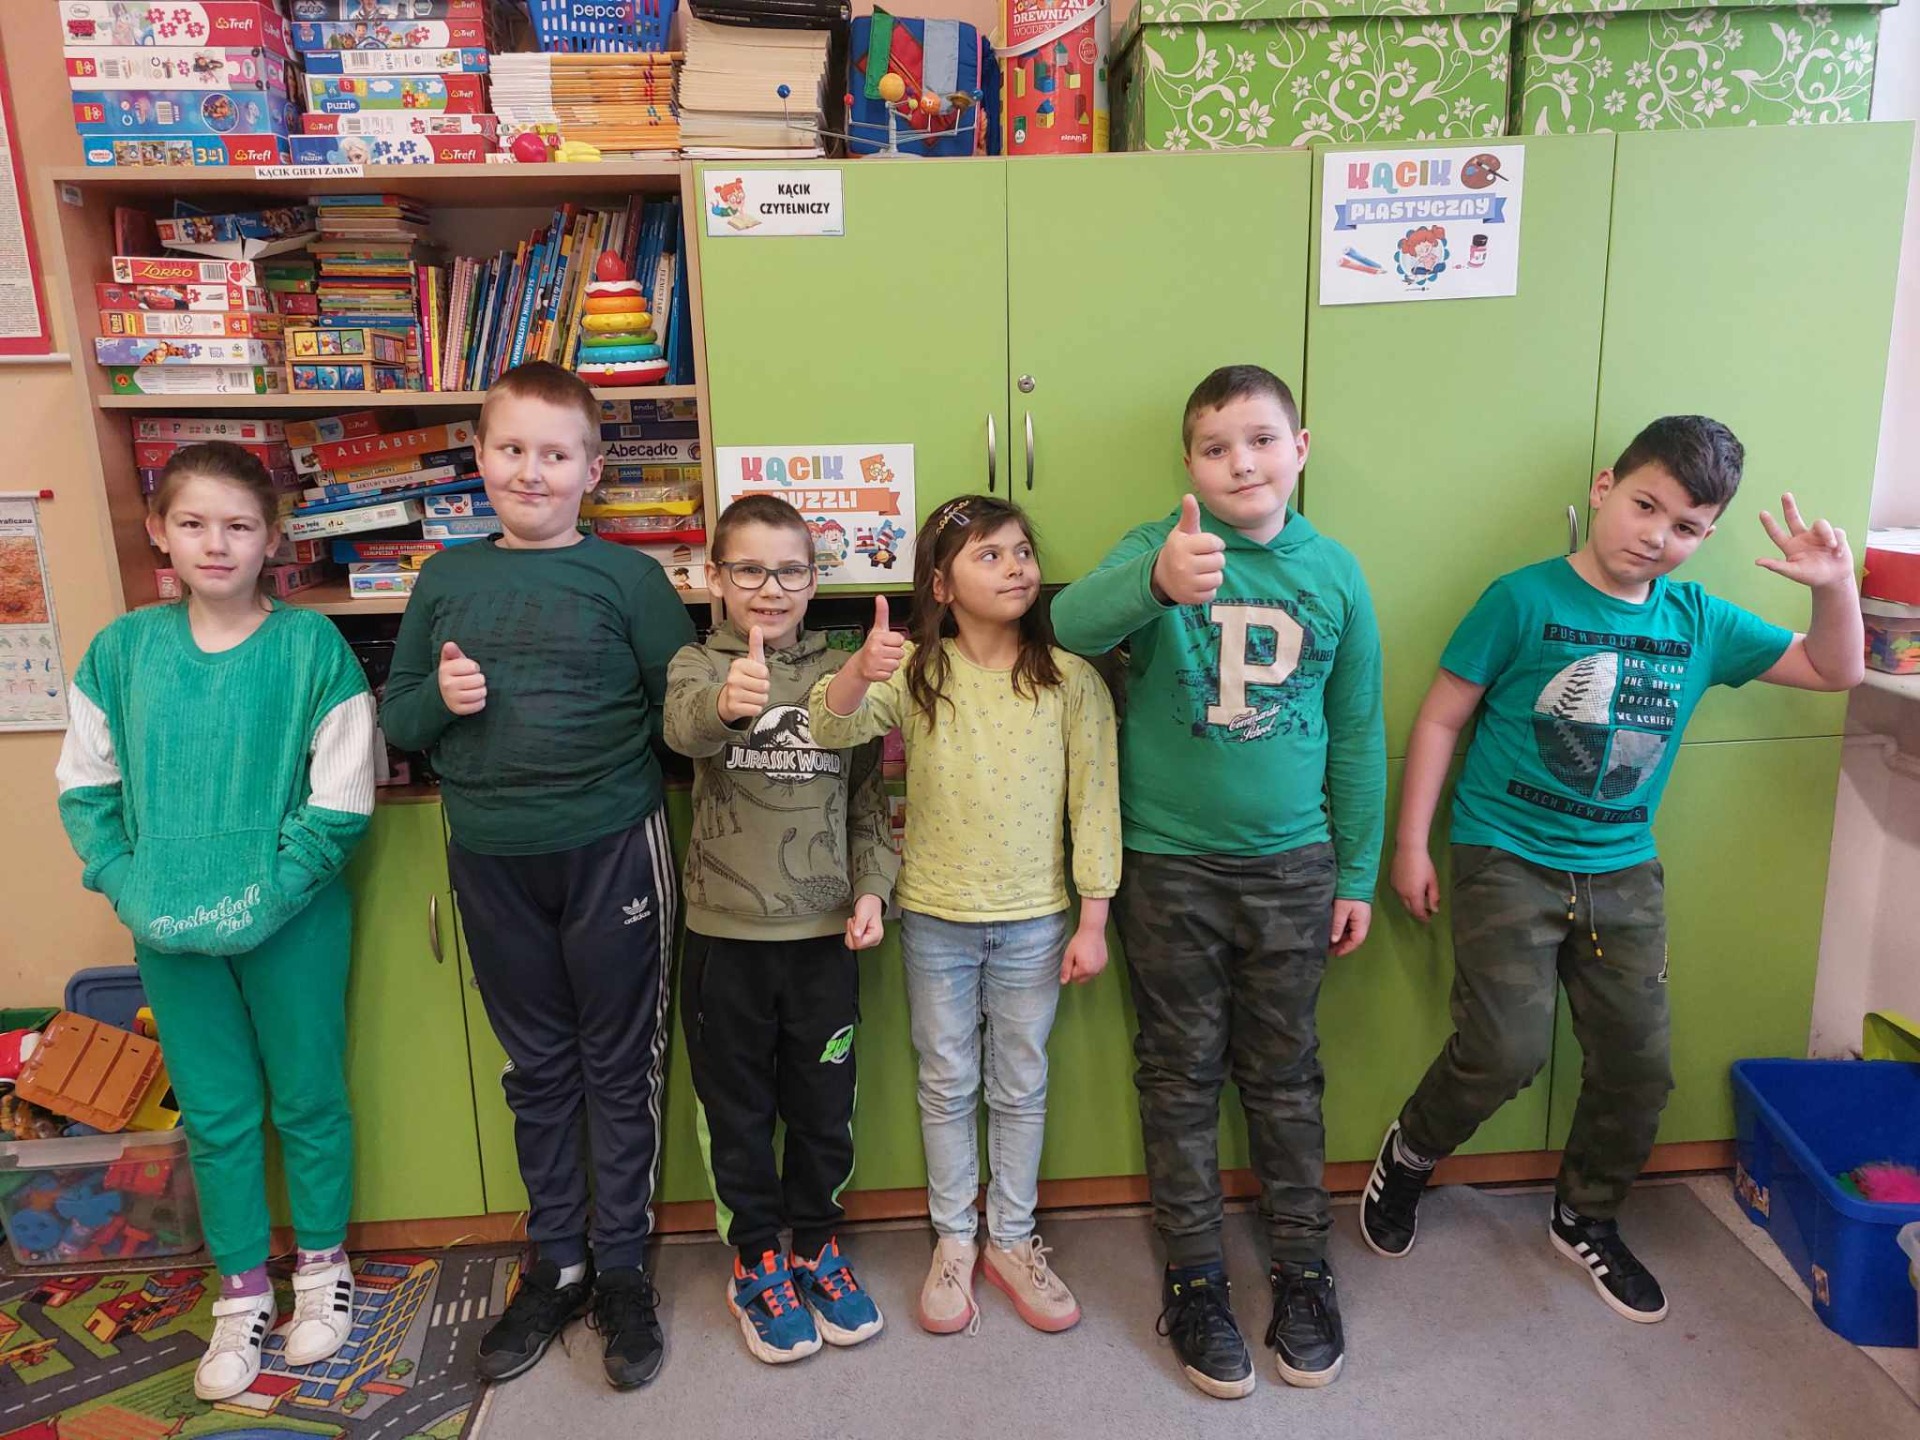 Grupa młodszych uczniów stoi i pozuje do zdjęcia, są ubrani na zielono